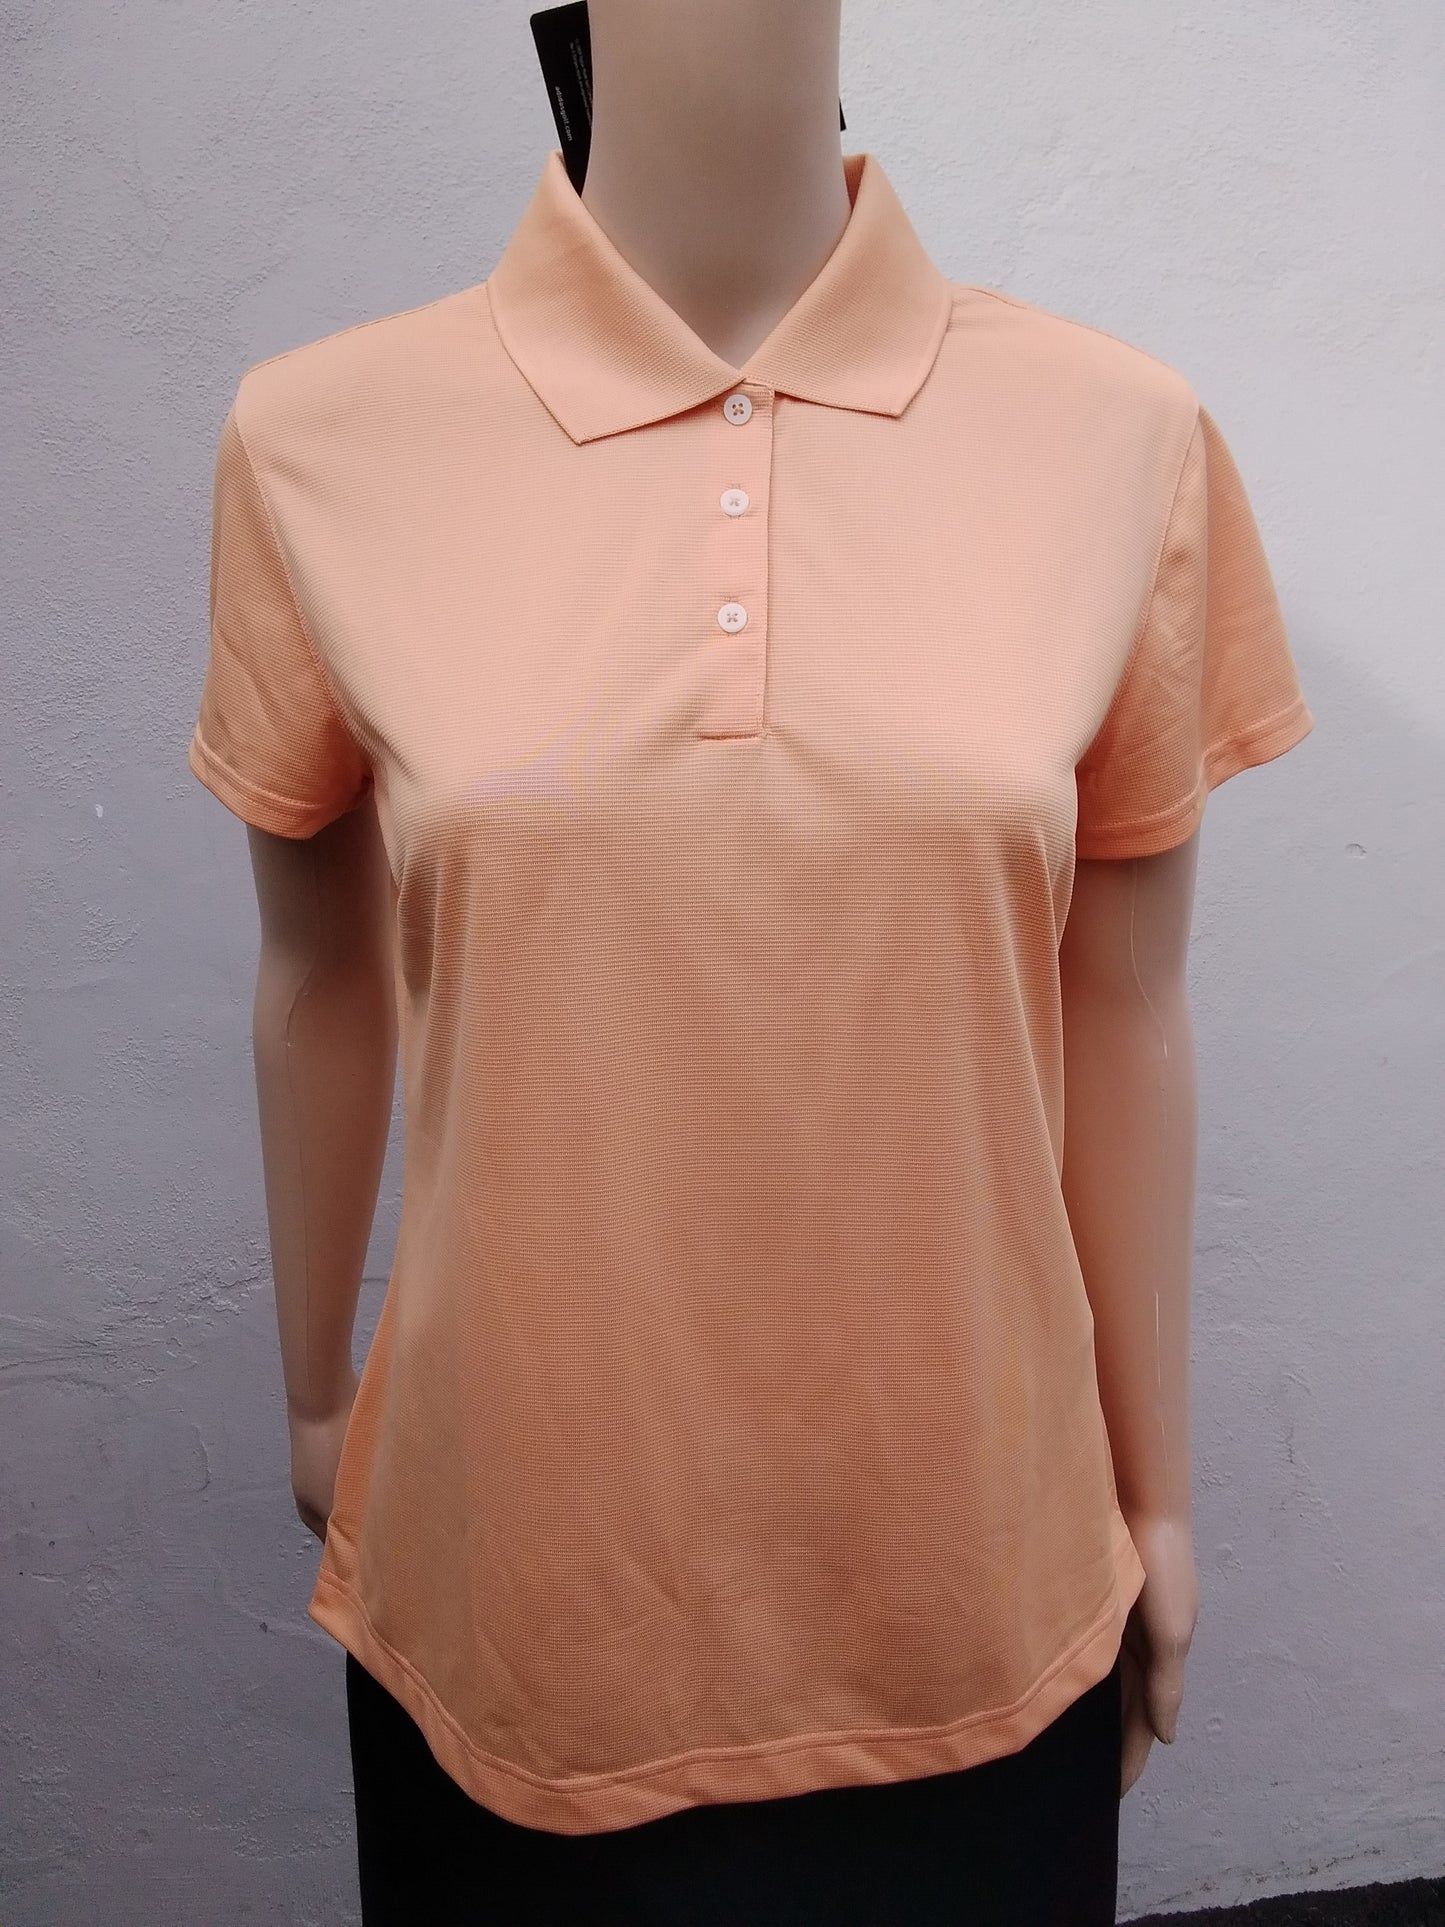 NWT - Adidas Golf peach Climalite Textured Solid Polo Shirt - M